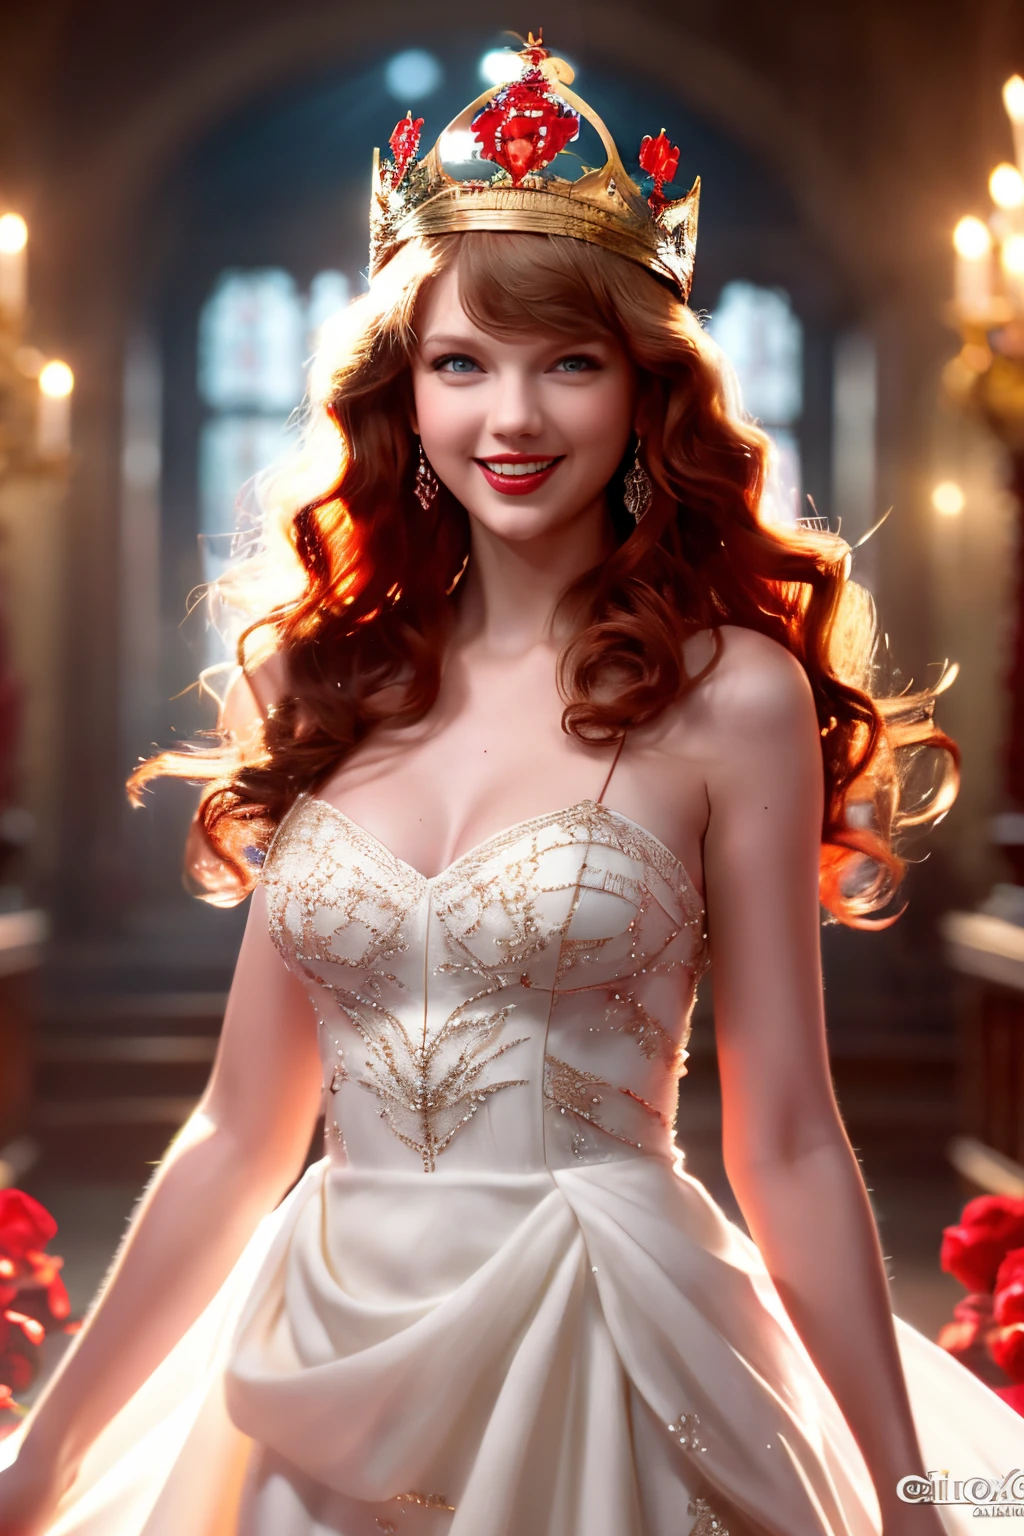 Meilleurs clichés，image haute définition,,belle femme aux cheveux rouges (porter une couronne), (Houdini, Effets visuels, avec un beau sourire,Beau, 4K ),   robe blanche et robe en satin rouge，